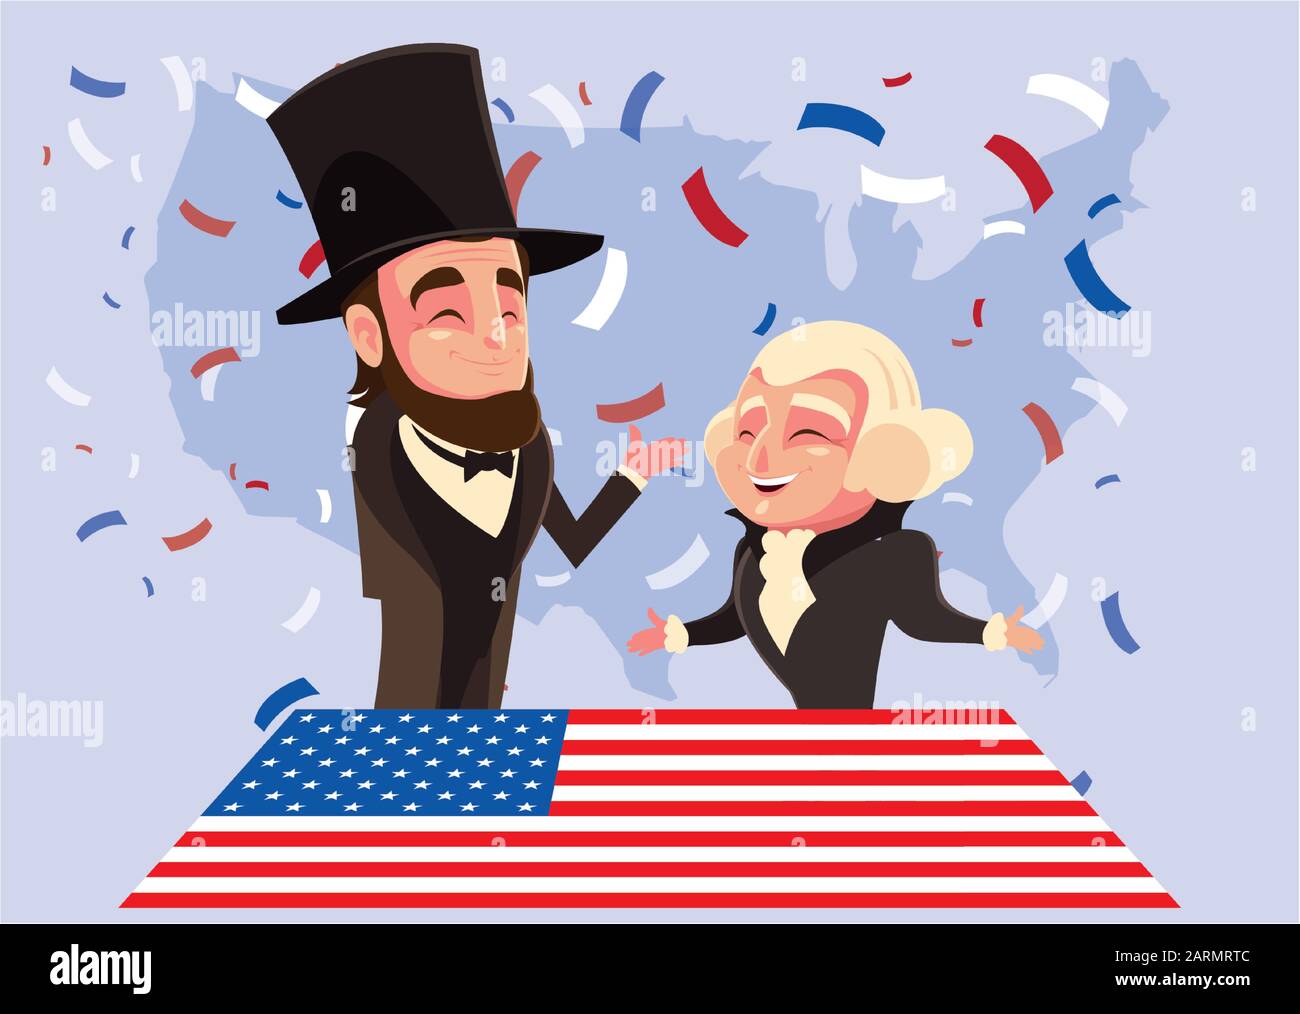 cartone animato dei presidenti george washington e abraham lincoln, president day vector illustration design Illustrazione Vettoriale